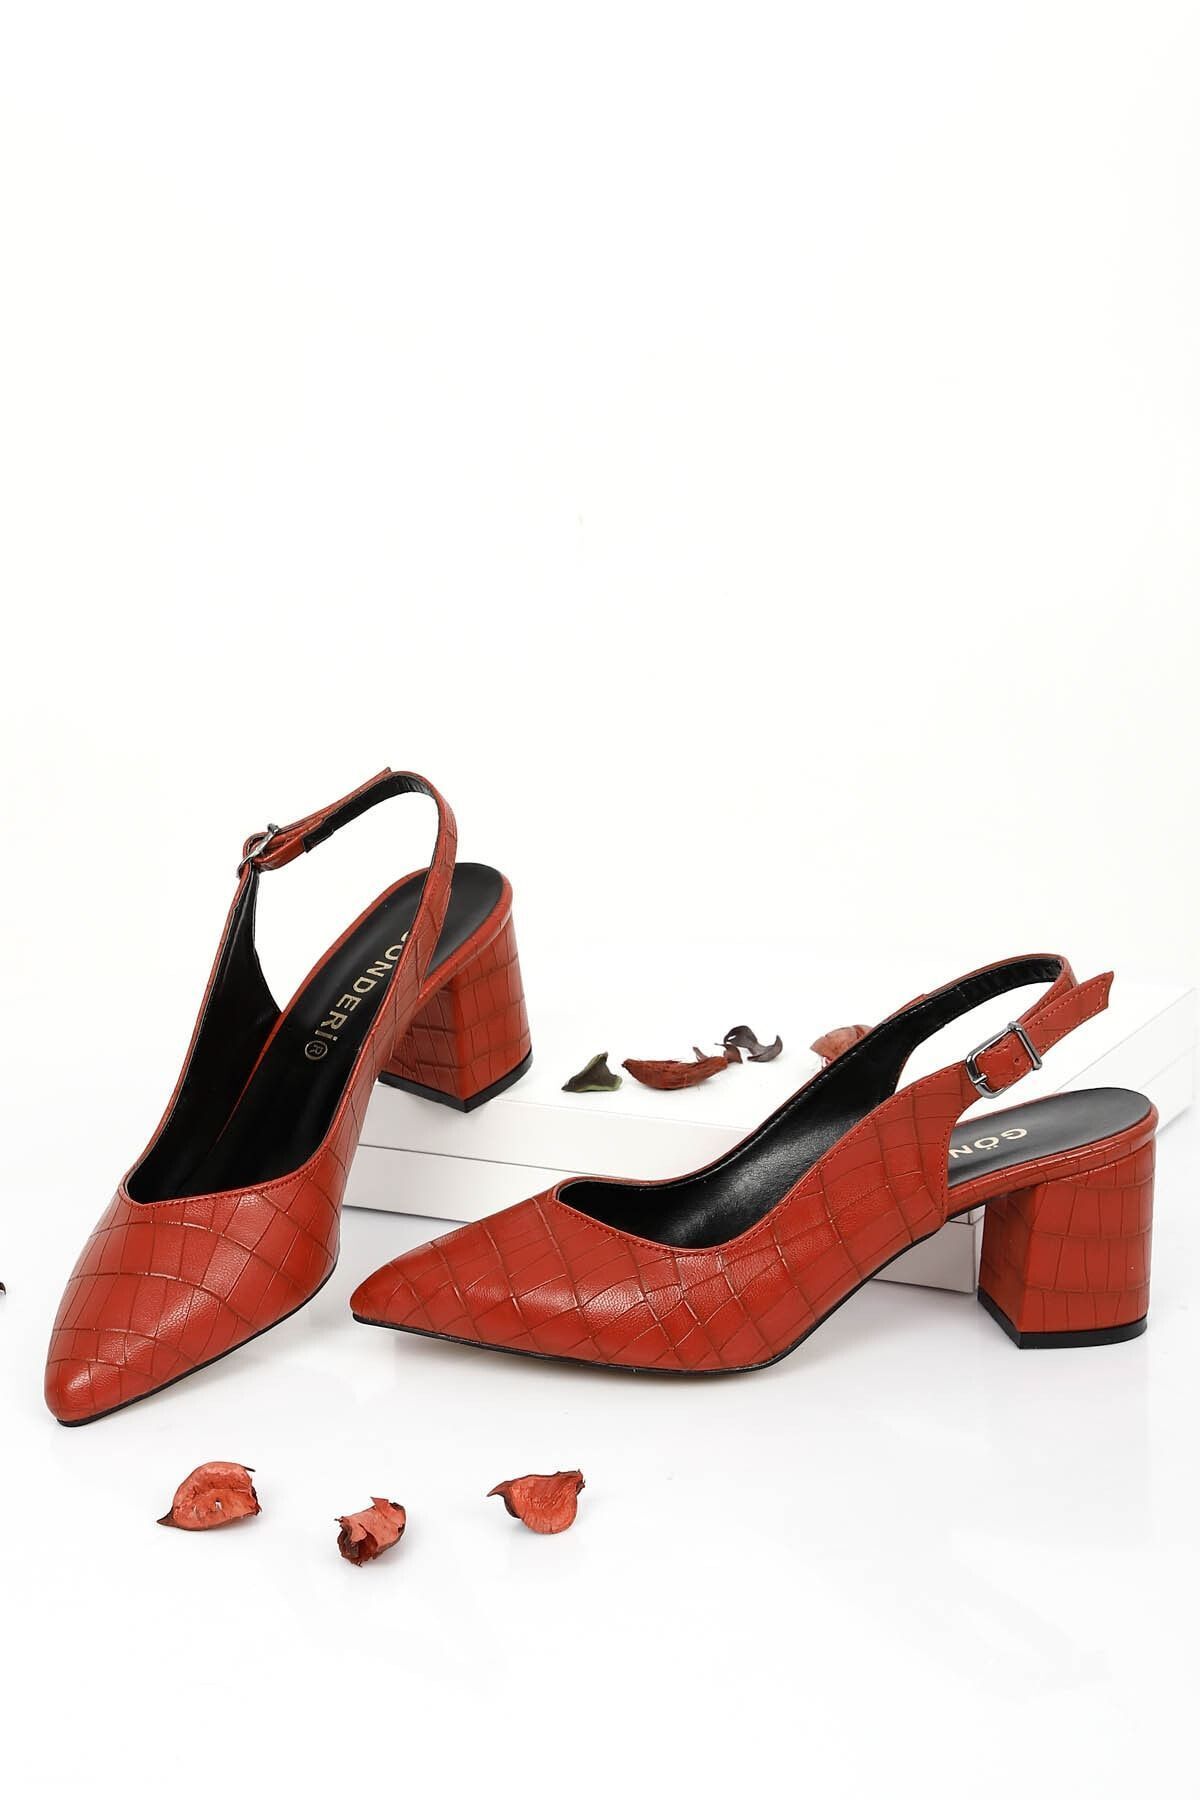 GÖNDERİ(R) Kırmızı Krako Gön Sivri Burun Orta Kalın Topuk Arkası Açık Kadın Ayakkabı 38921